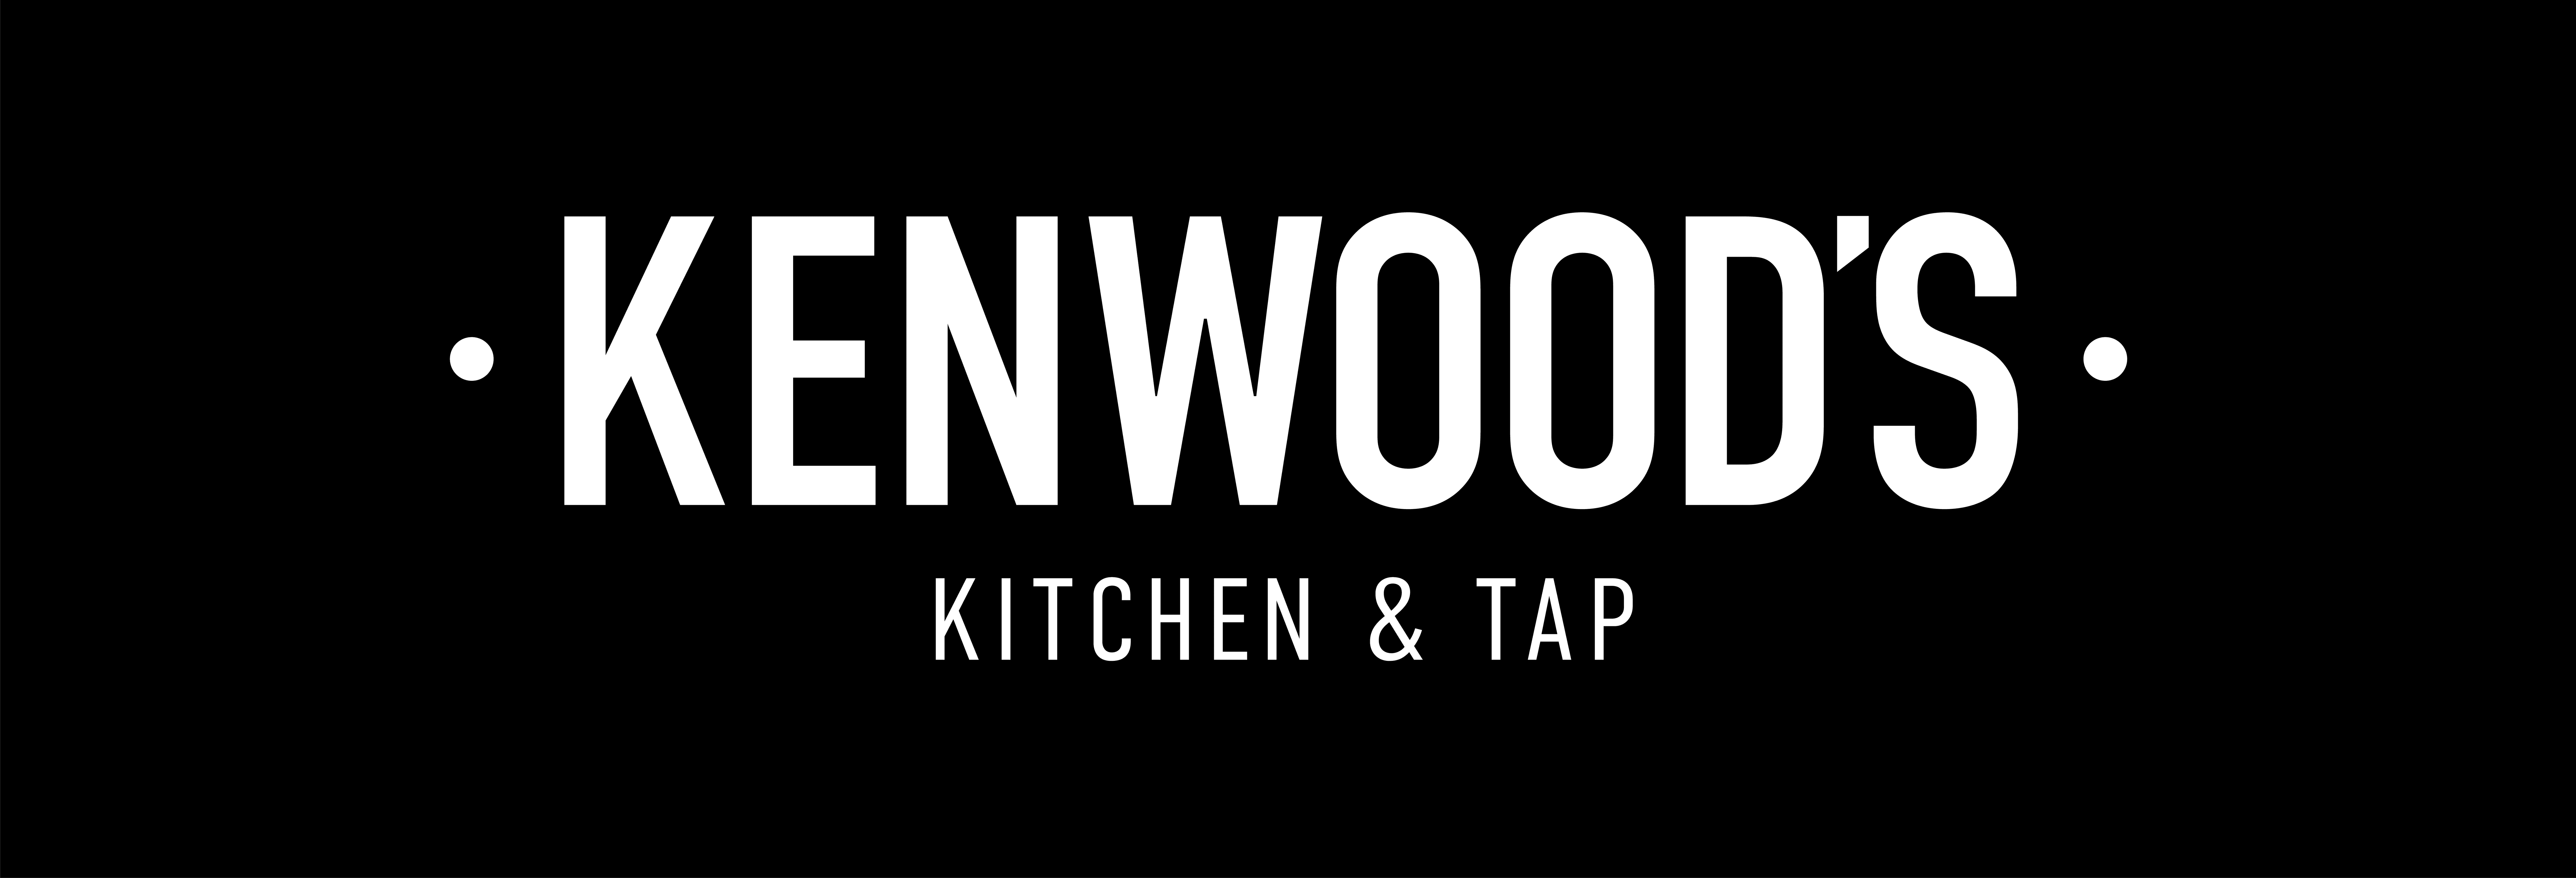 Kenwood's